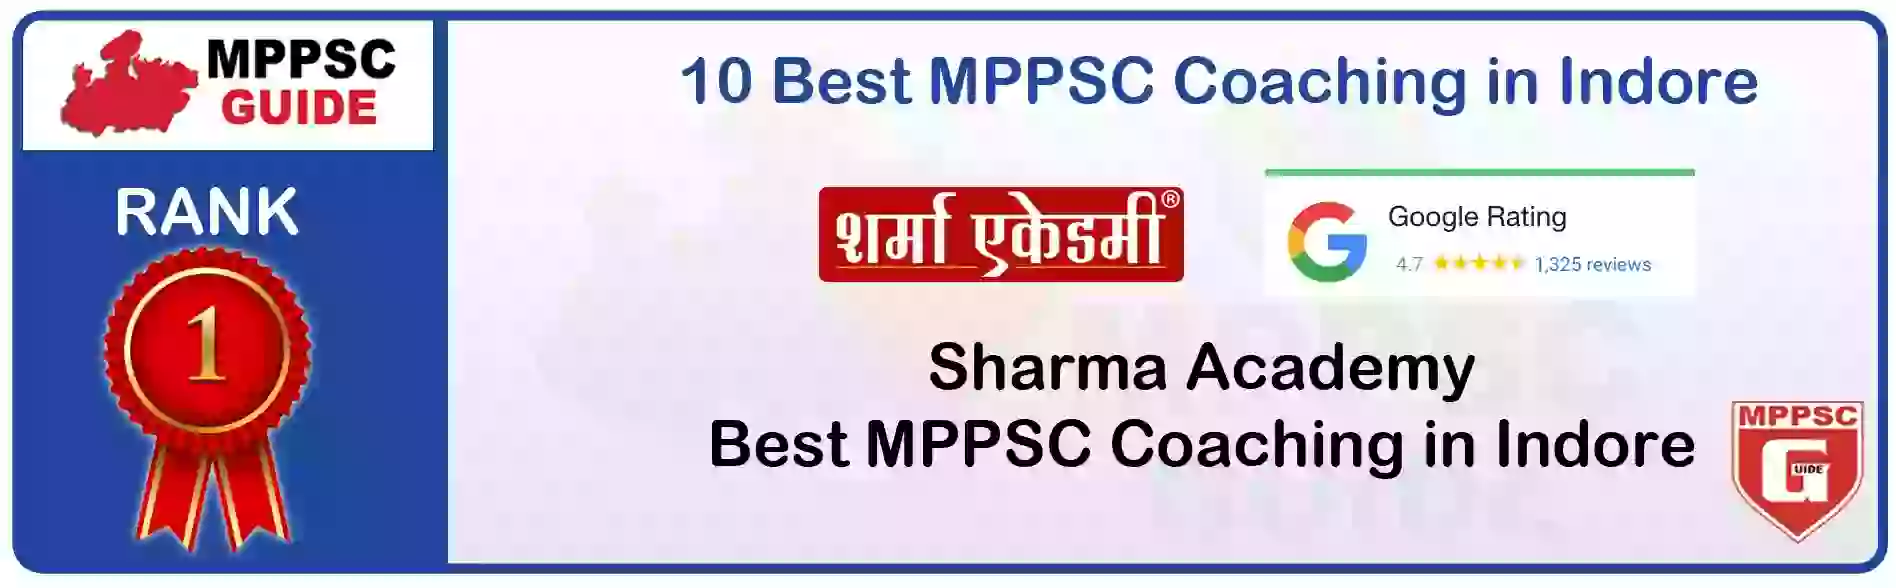 MPPSC Coaching in Bhopal, MPPSC Coaching Institute In Bhopal, Best MPPSC Coaching in Bhopal, Top 10 MPPSC Coaching In Bhopal, best mppsc coaching institute in bhopal, MPPSC Coaching Classes In Bhopal, MPPSC Online Coaching In Bhopal, mppsc coaching in Bhopal bhanwarkua